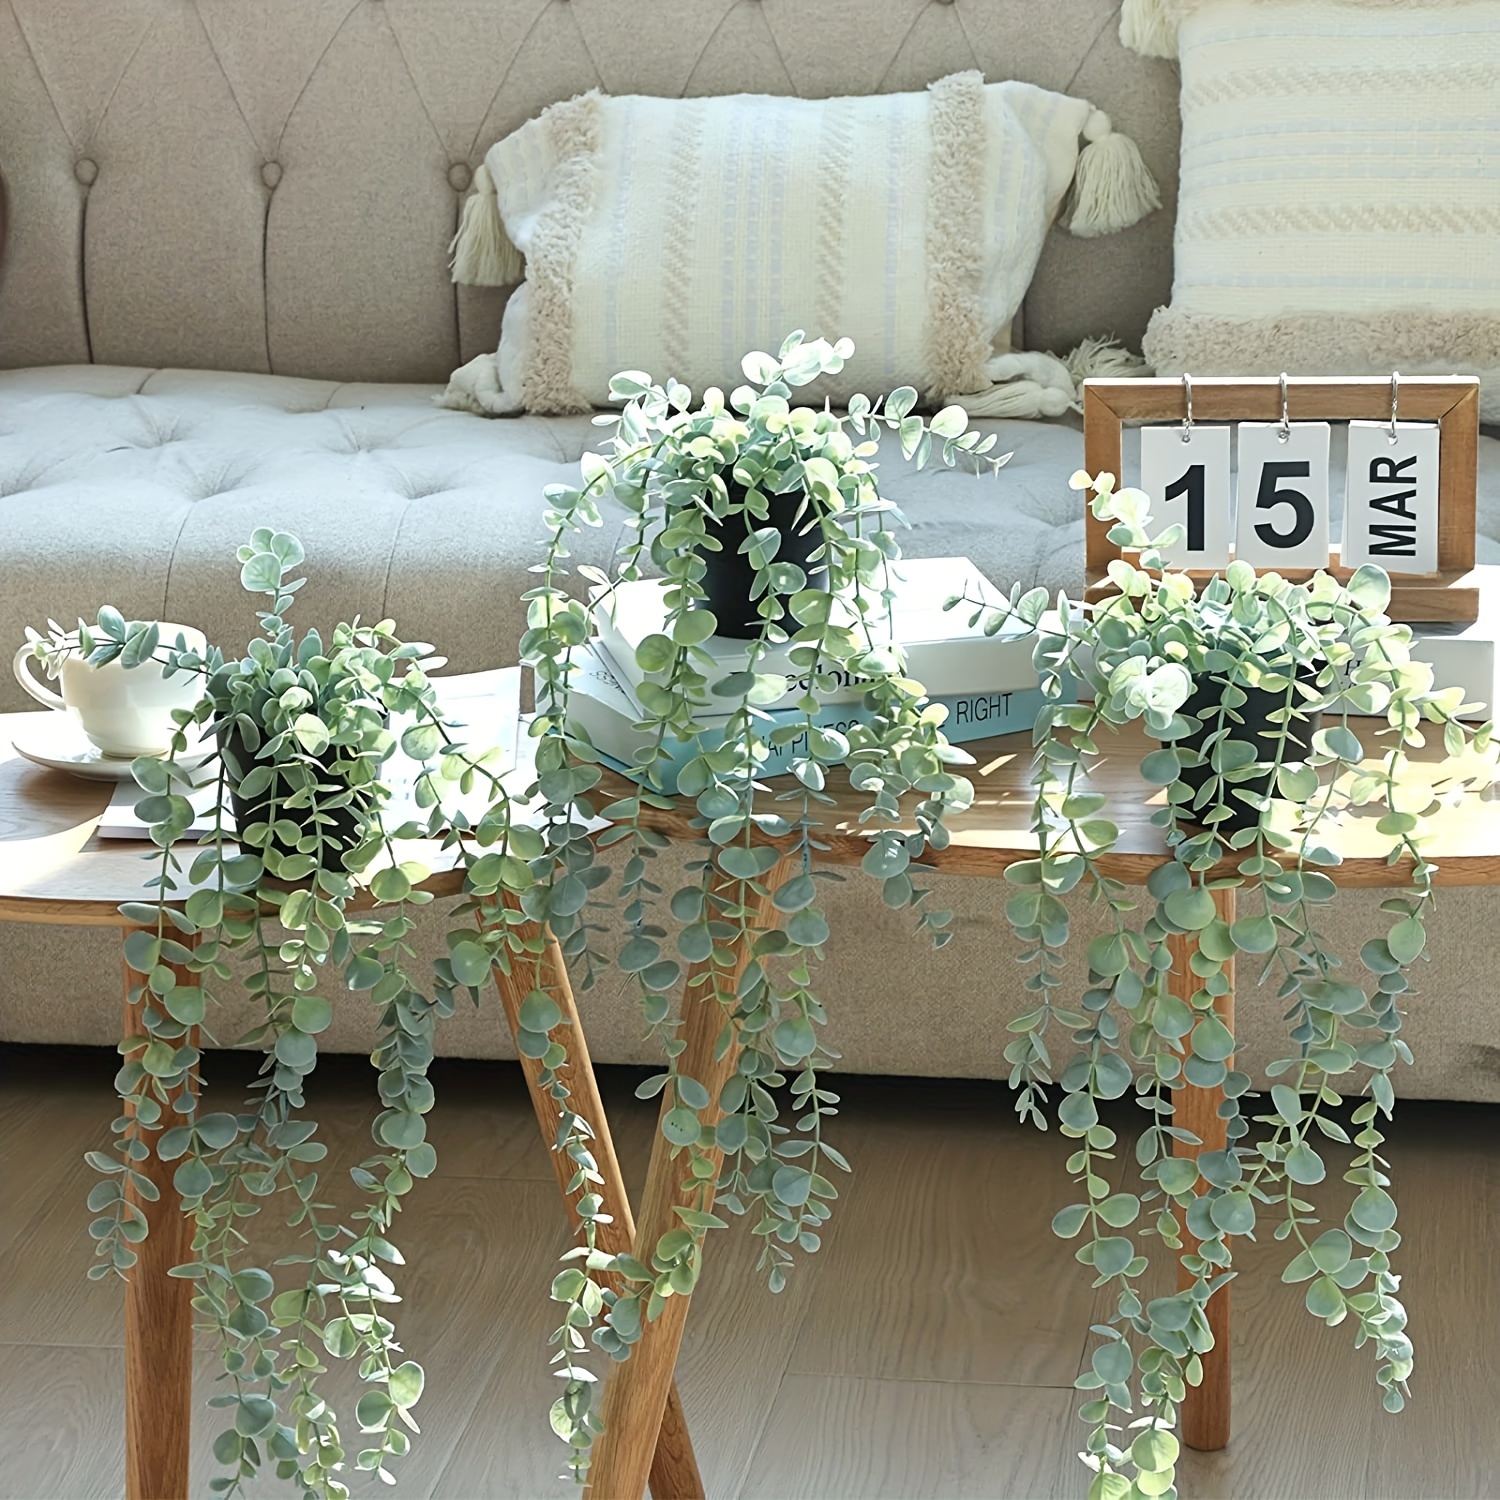 Lvydec Paquete de 4 plantas colgantes artificiales con macetas, plantas  colgantes falsas de eucalipto en maceta para pared, habitación, cocina